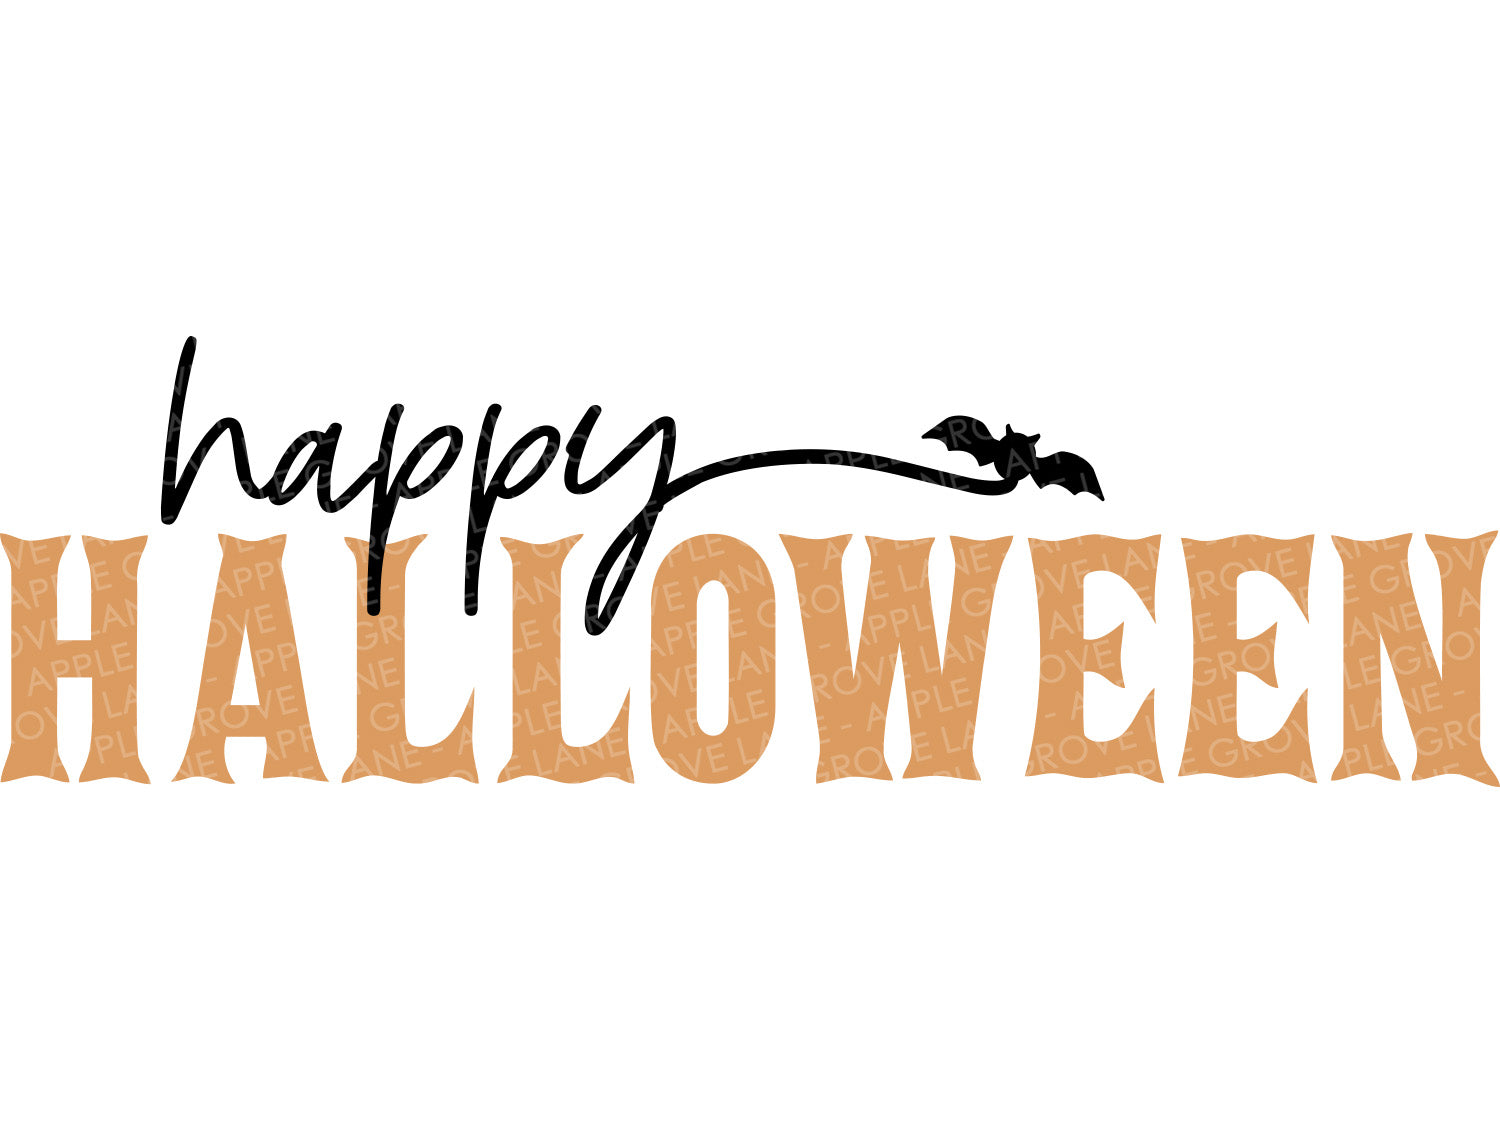 Happy Halloween Svg - Halloween Svg - Halloween Svg - Halloween Png - Halloween Laser Cut File - Happy Halloween Sign - Halloween Shirt Svg